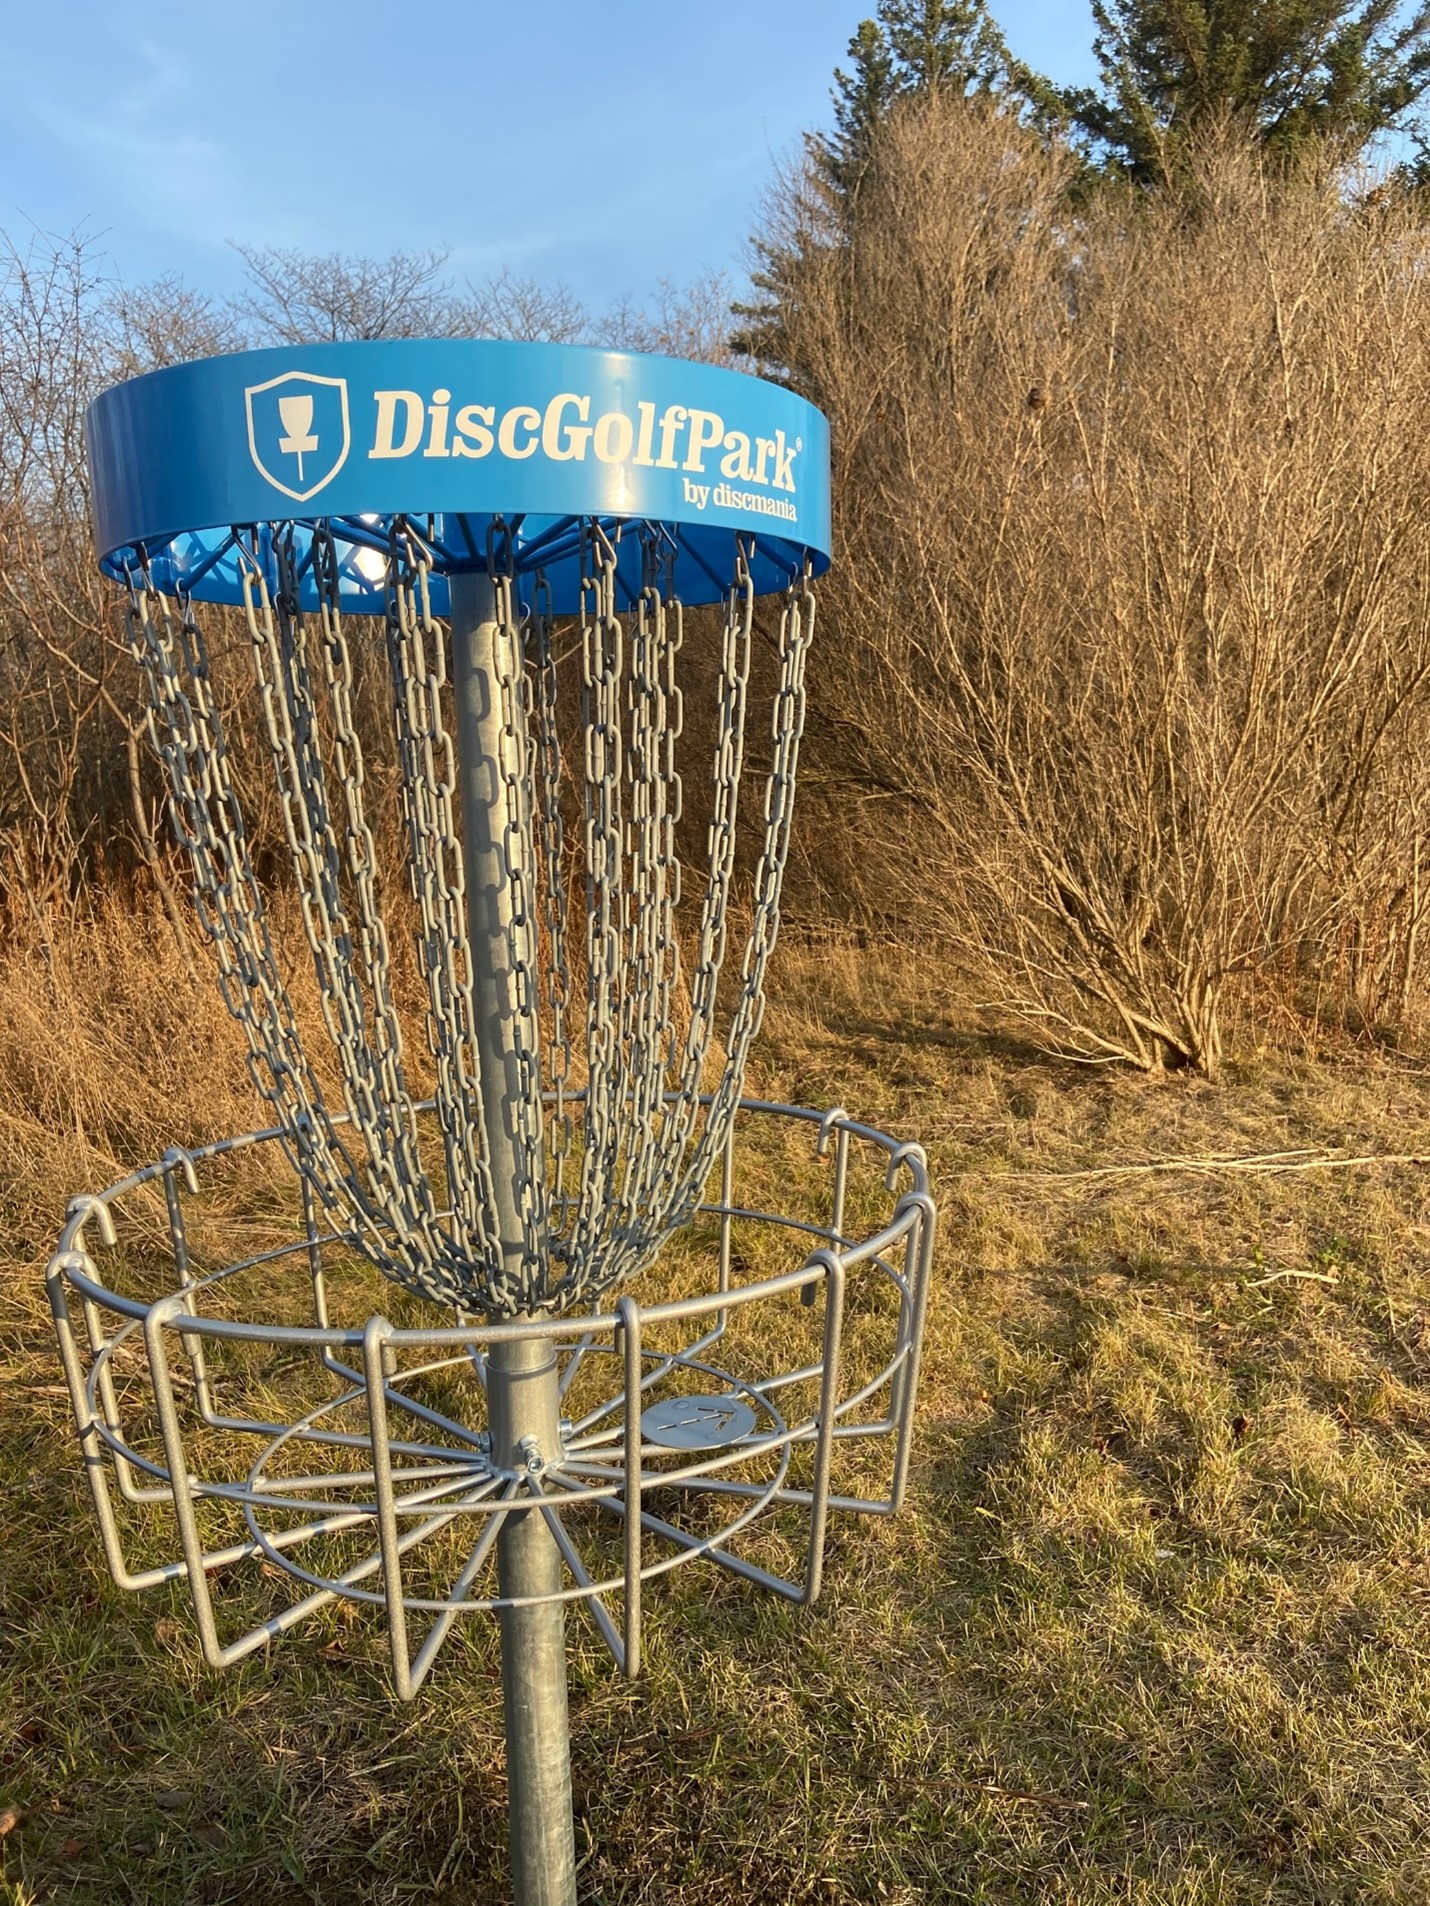 Disc golf